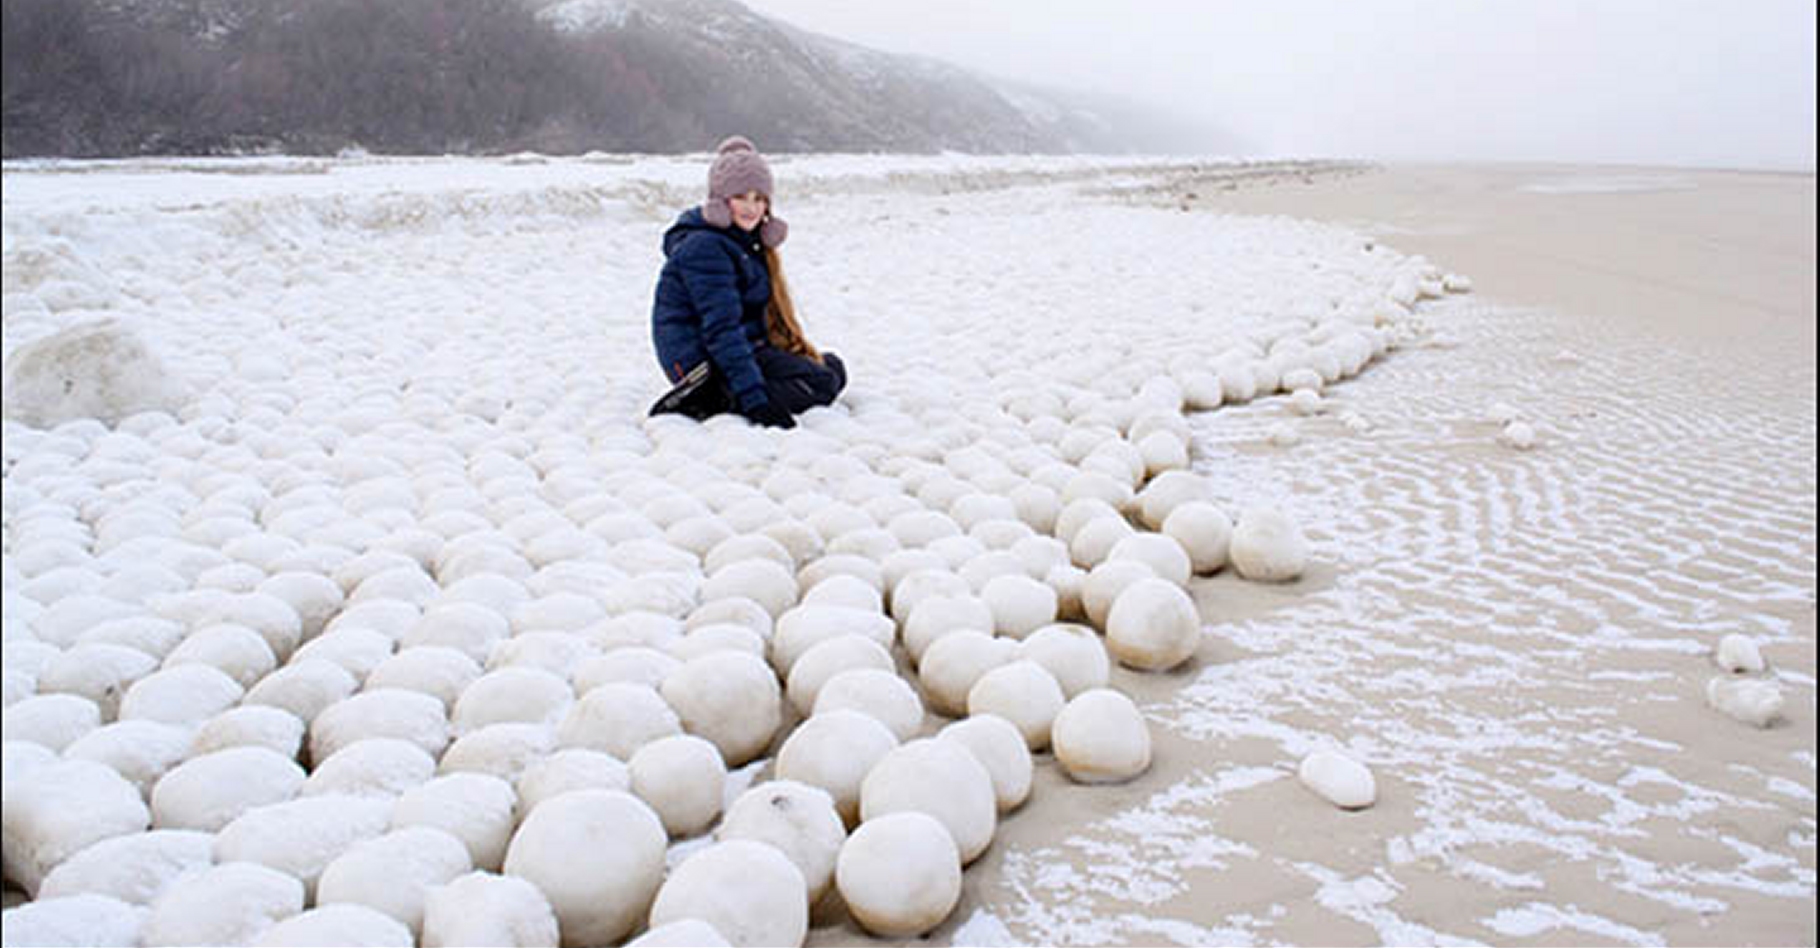 Comment se sont formées ces énormes boules glacées ? Par l'action du vent, probablement, qui a fait rouler sur la plage des paquets de neige sale et fondante. © Ekaterina Chernykh